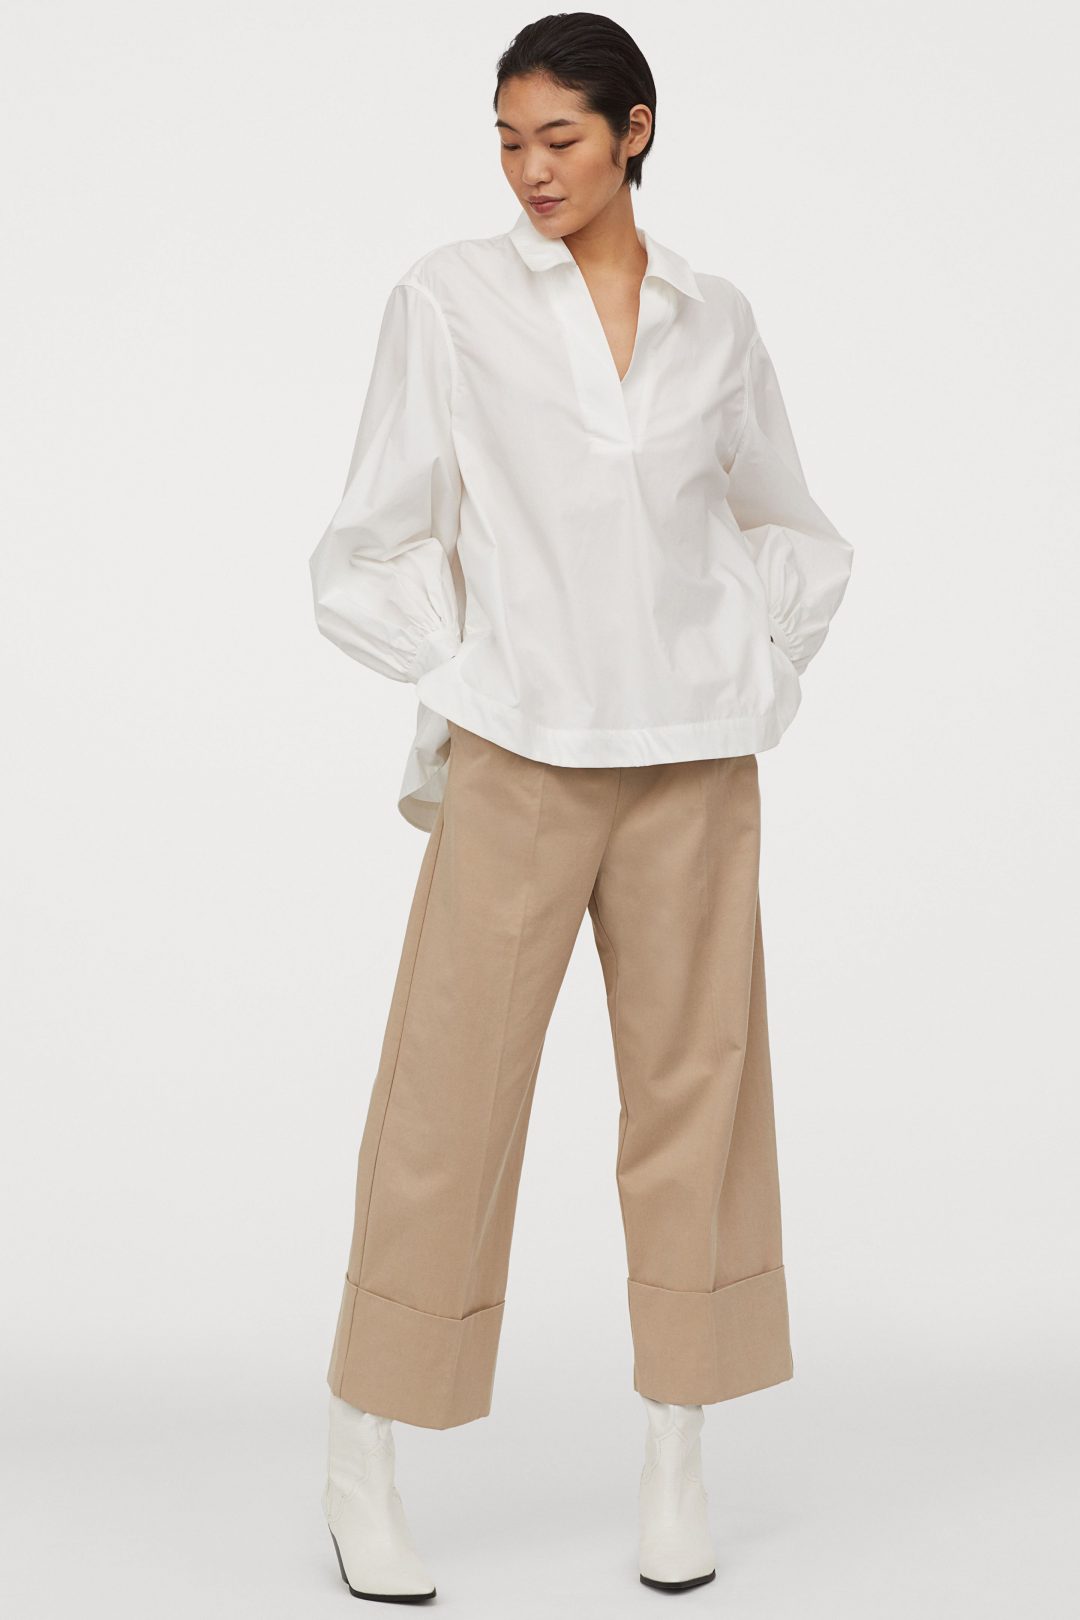 H&M hlače proljeće 2020.